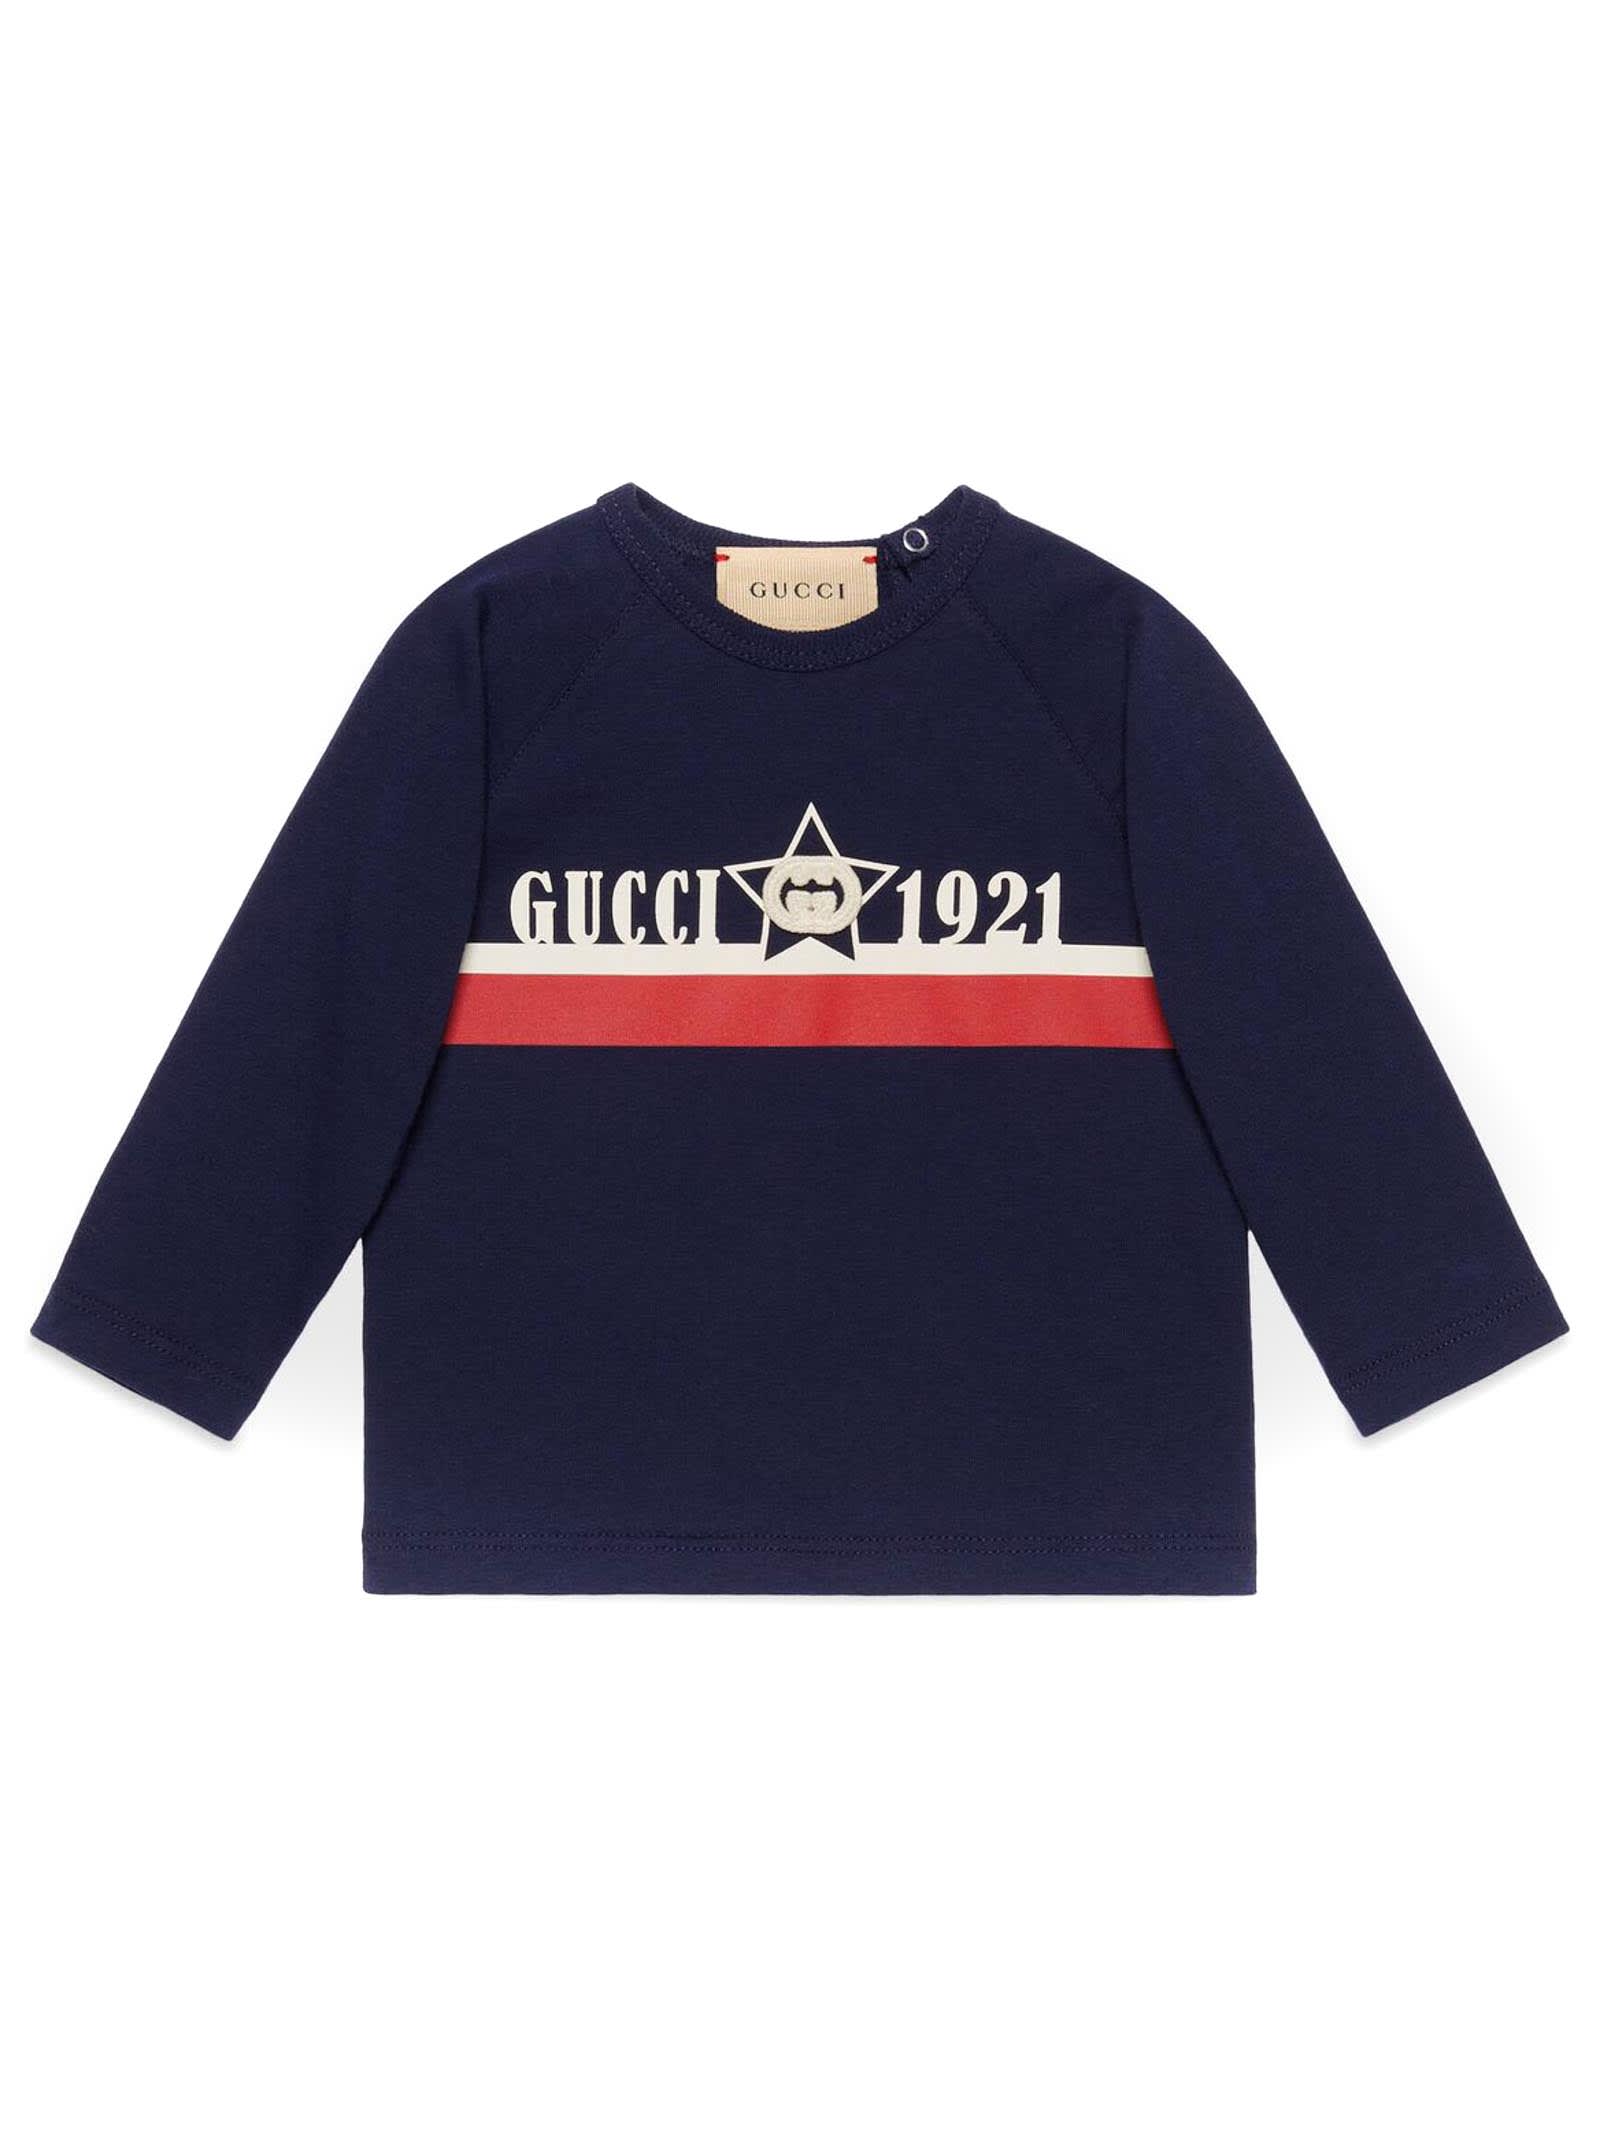 Gucci Dark Blue Cotton Jersey Sweatshirt